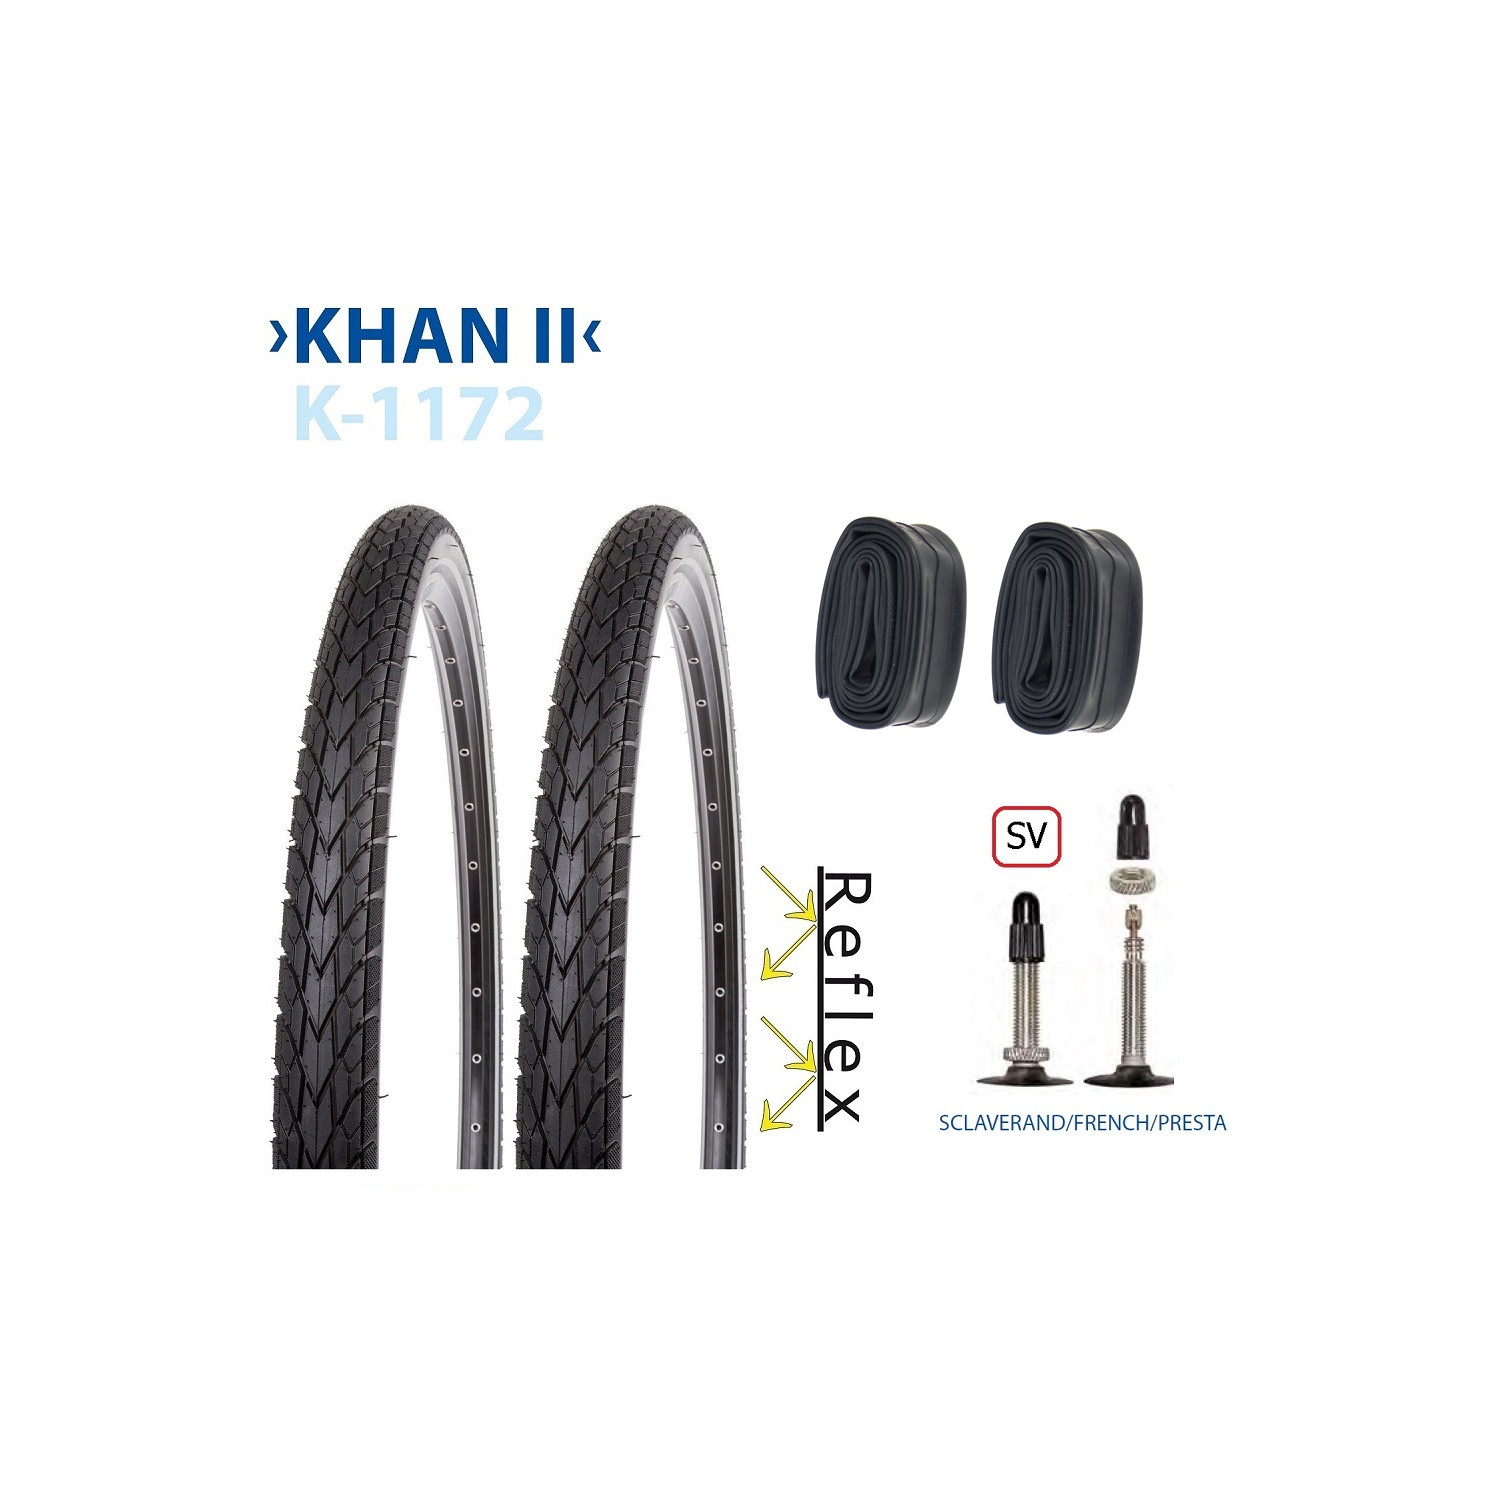 Reifen KENDA K-1172, KHAN II, 35-622, K-SHIELD, REFLEX, in schwarz